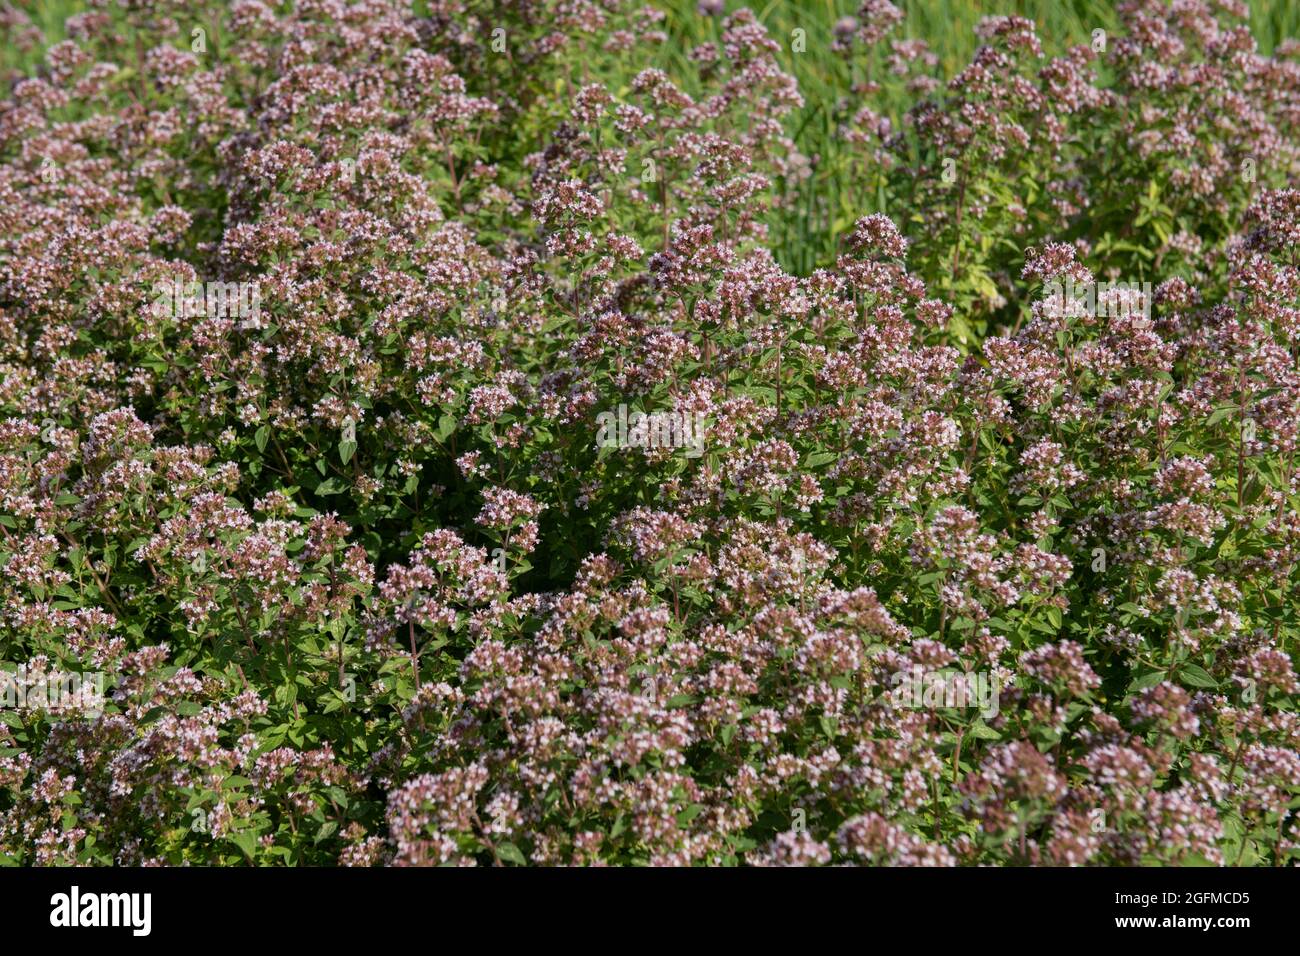 Sommer Blühende kleine blassen rosa Blüten auf einer Mehrjährigen Majoran-Kräuterpflanze (Origanum Majorana 'Gold Tipped'), die in einer krautigen Grenze in einem Gard wächst Stockfoto